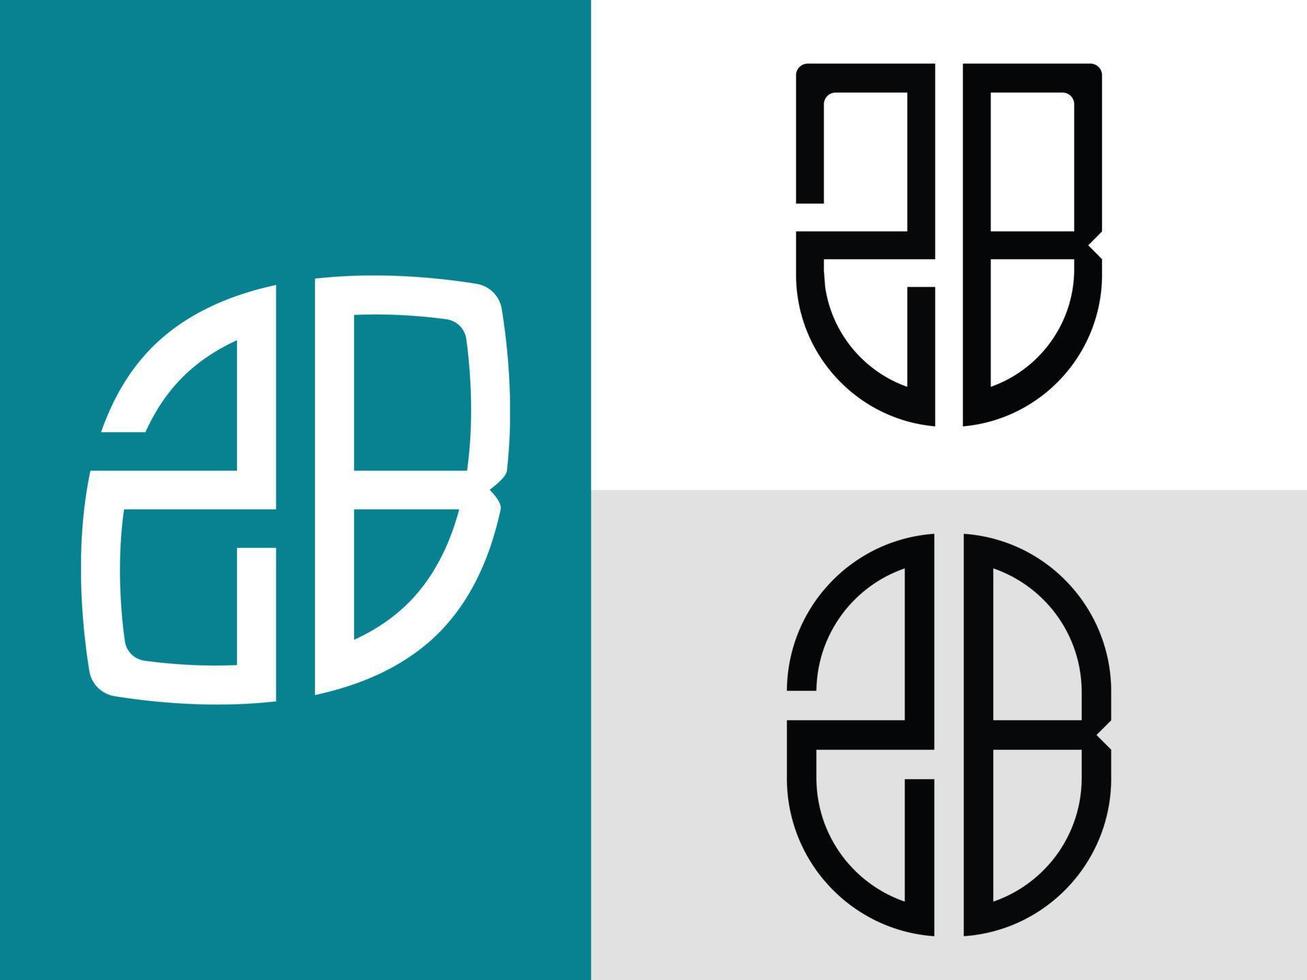 pacchetto creativo di lettere iniziali zb logo design. vettore